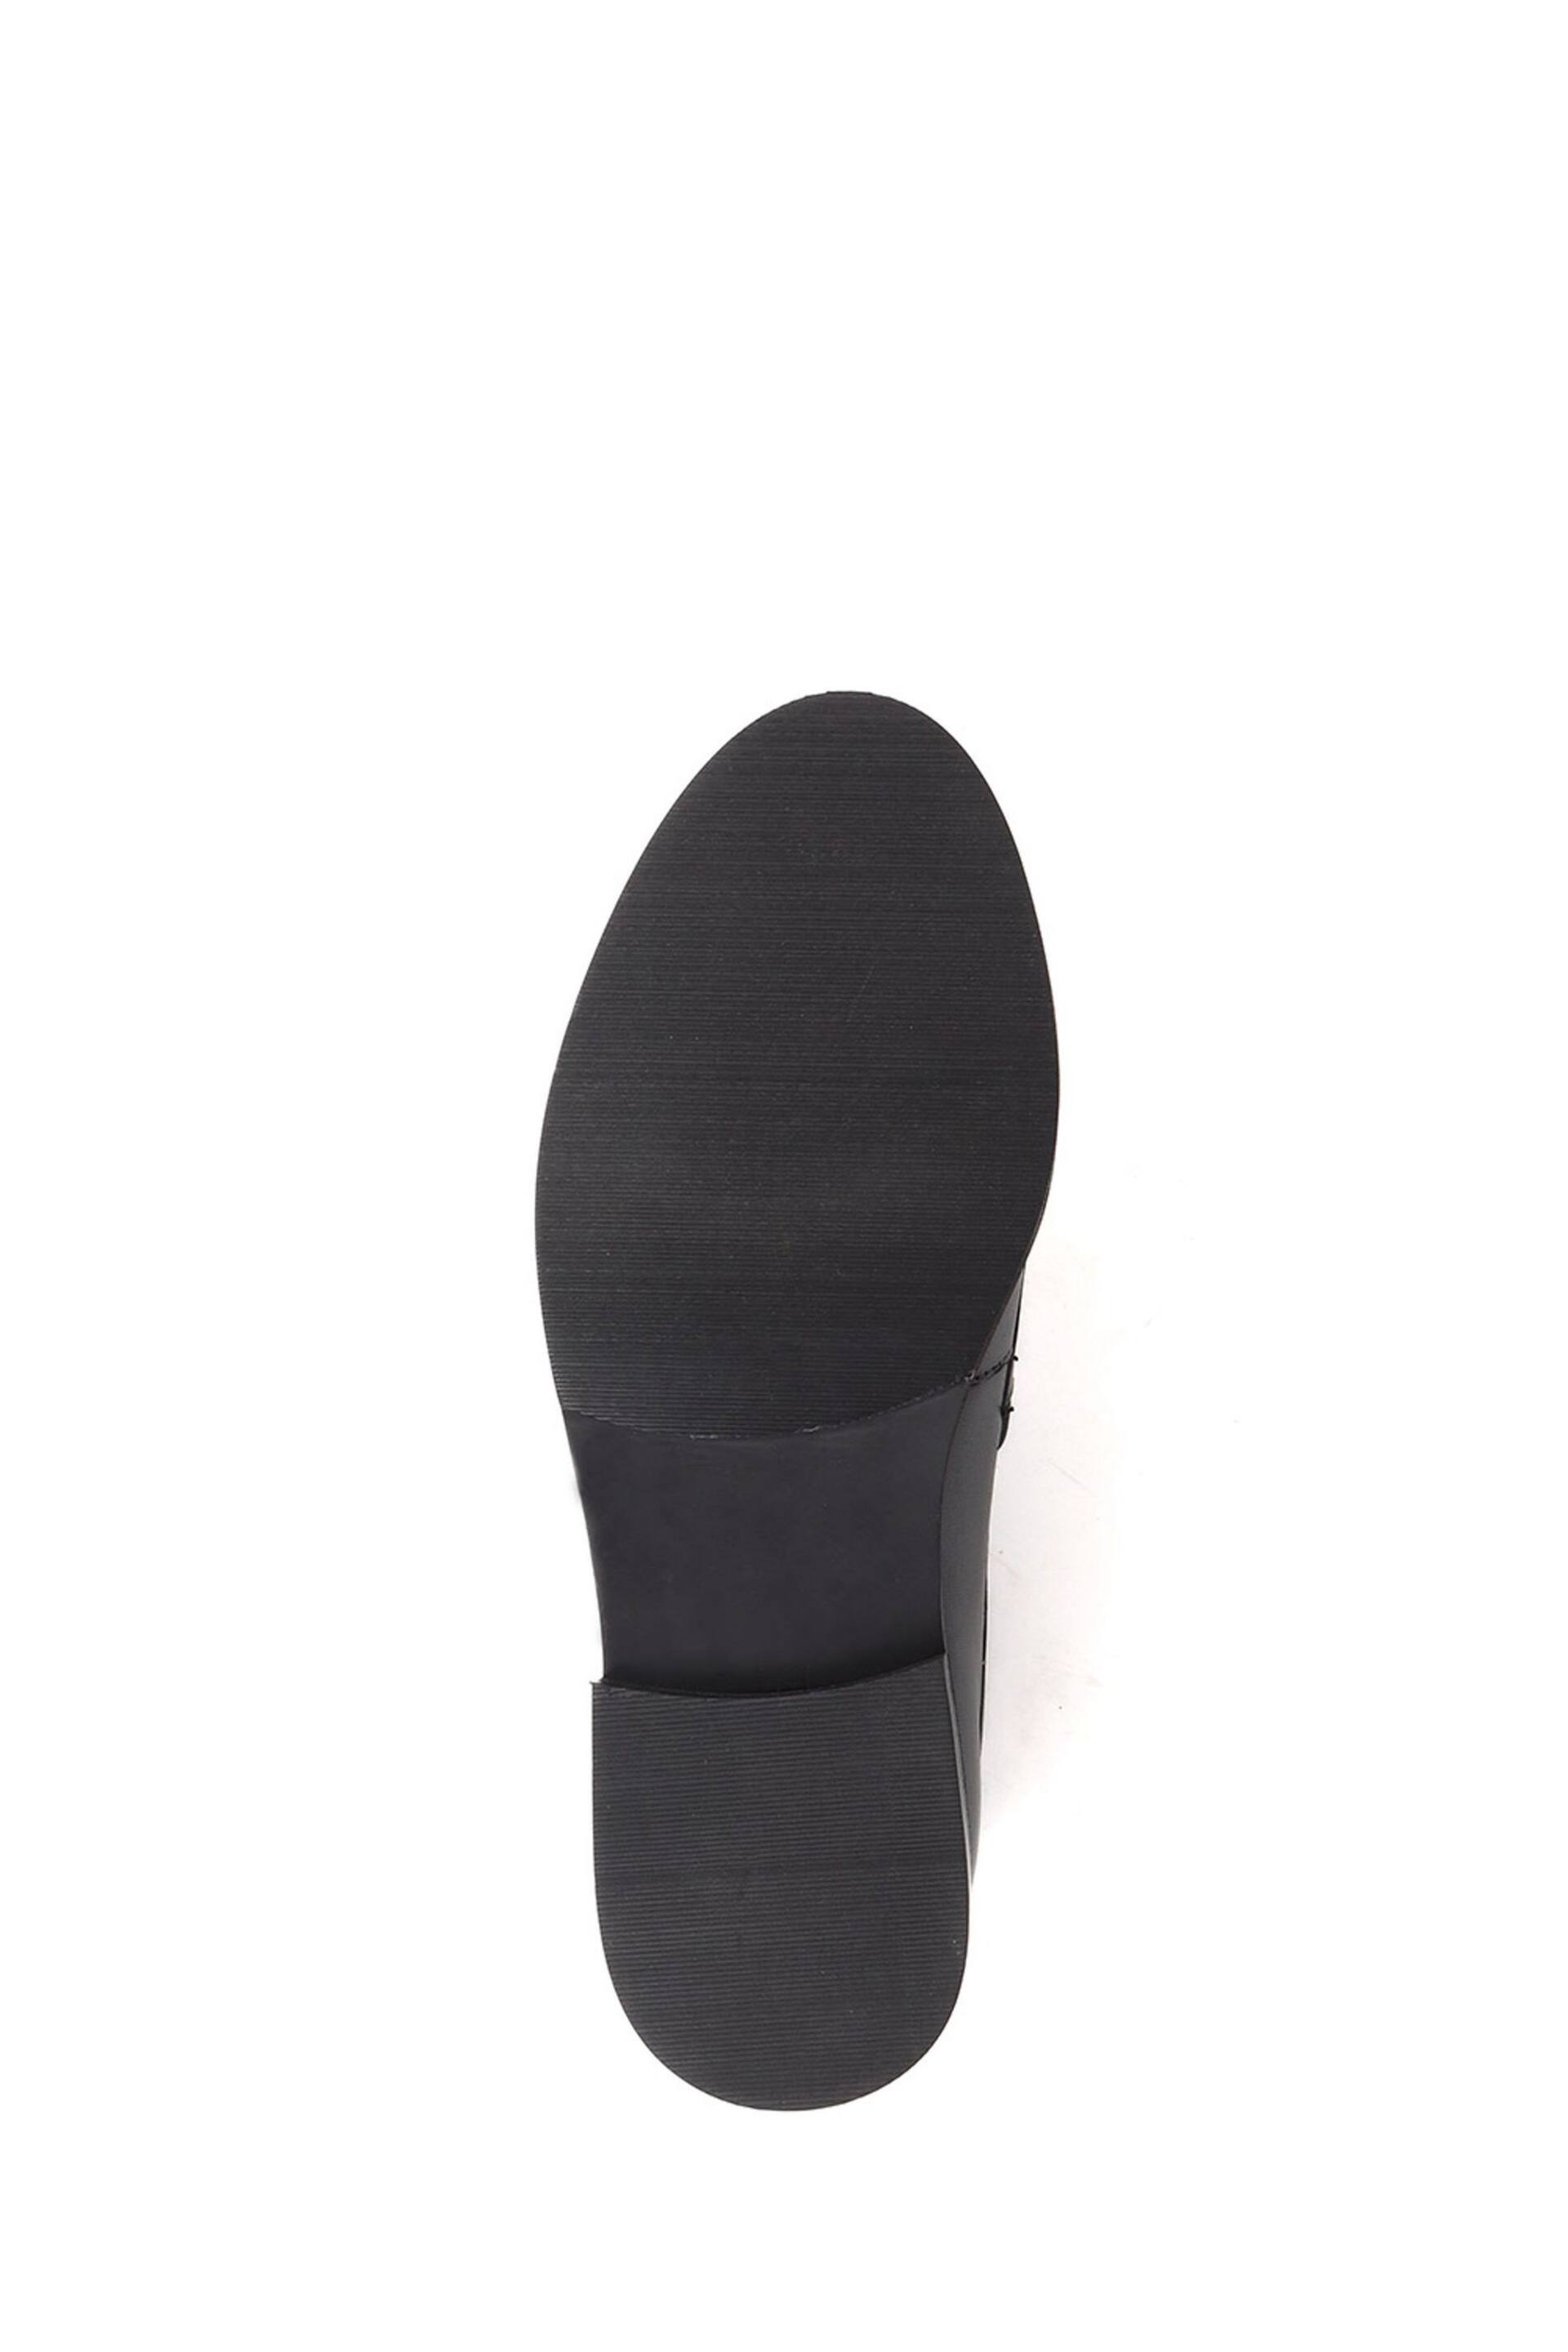 Jones Bootmaker Mari Leather Black Loafers - Image 5 of 5